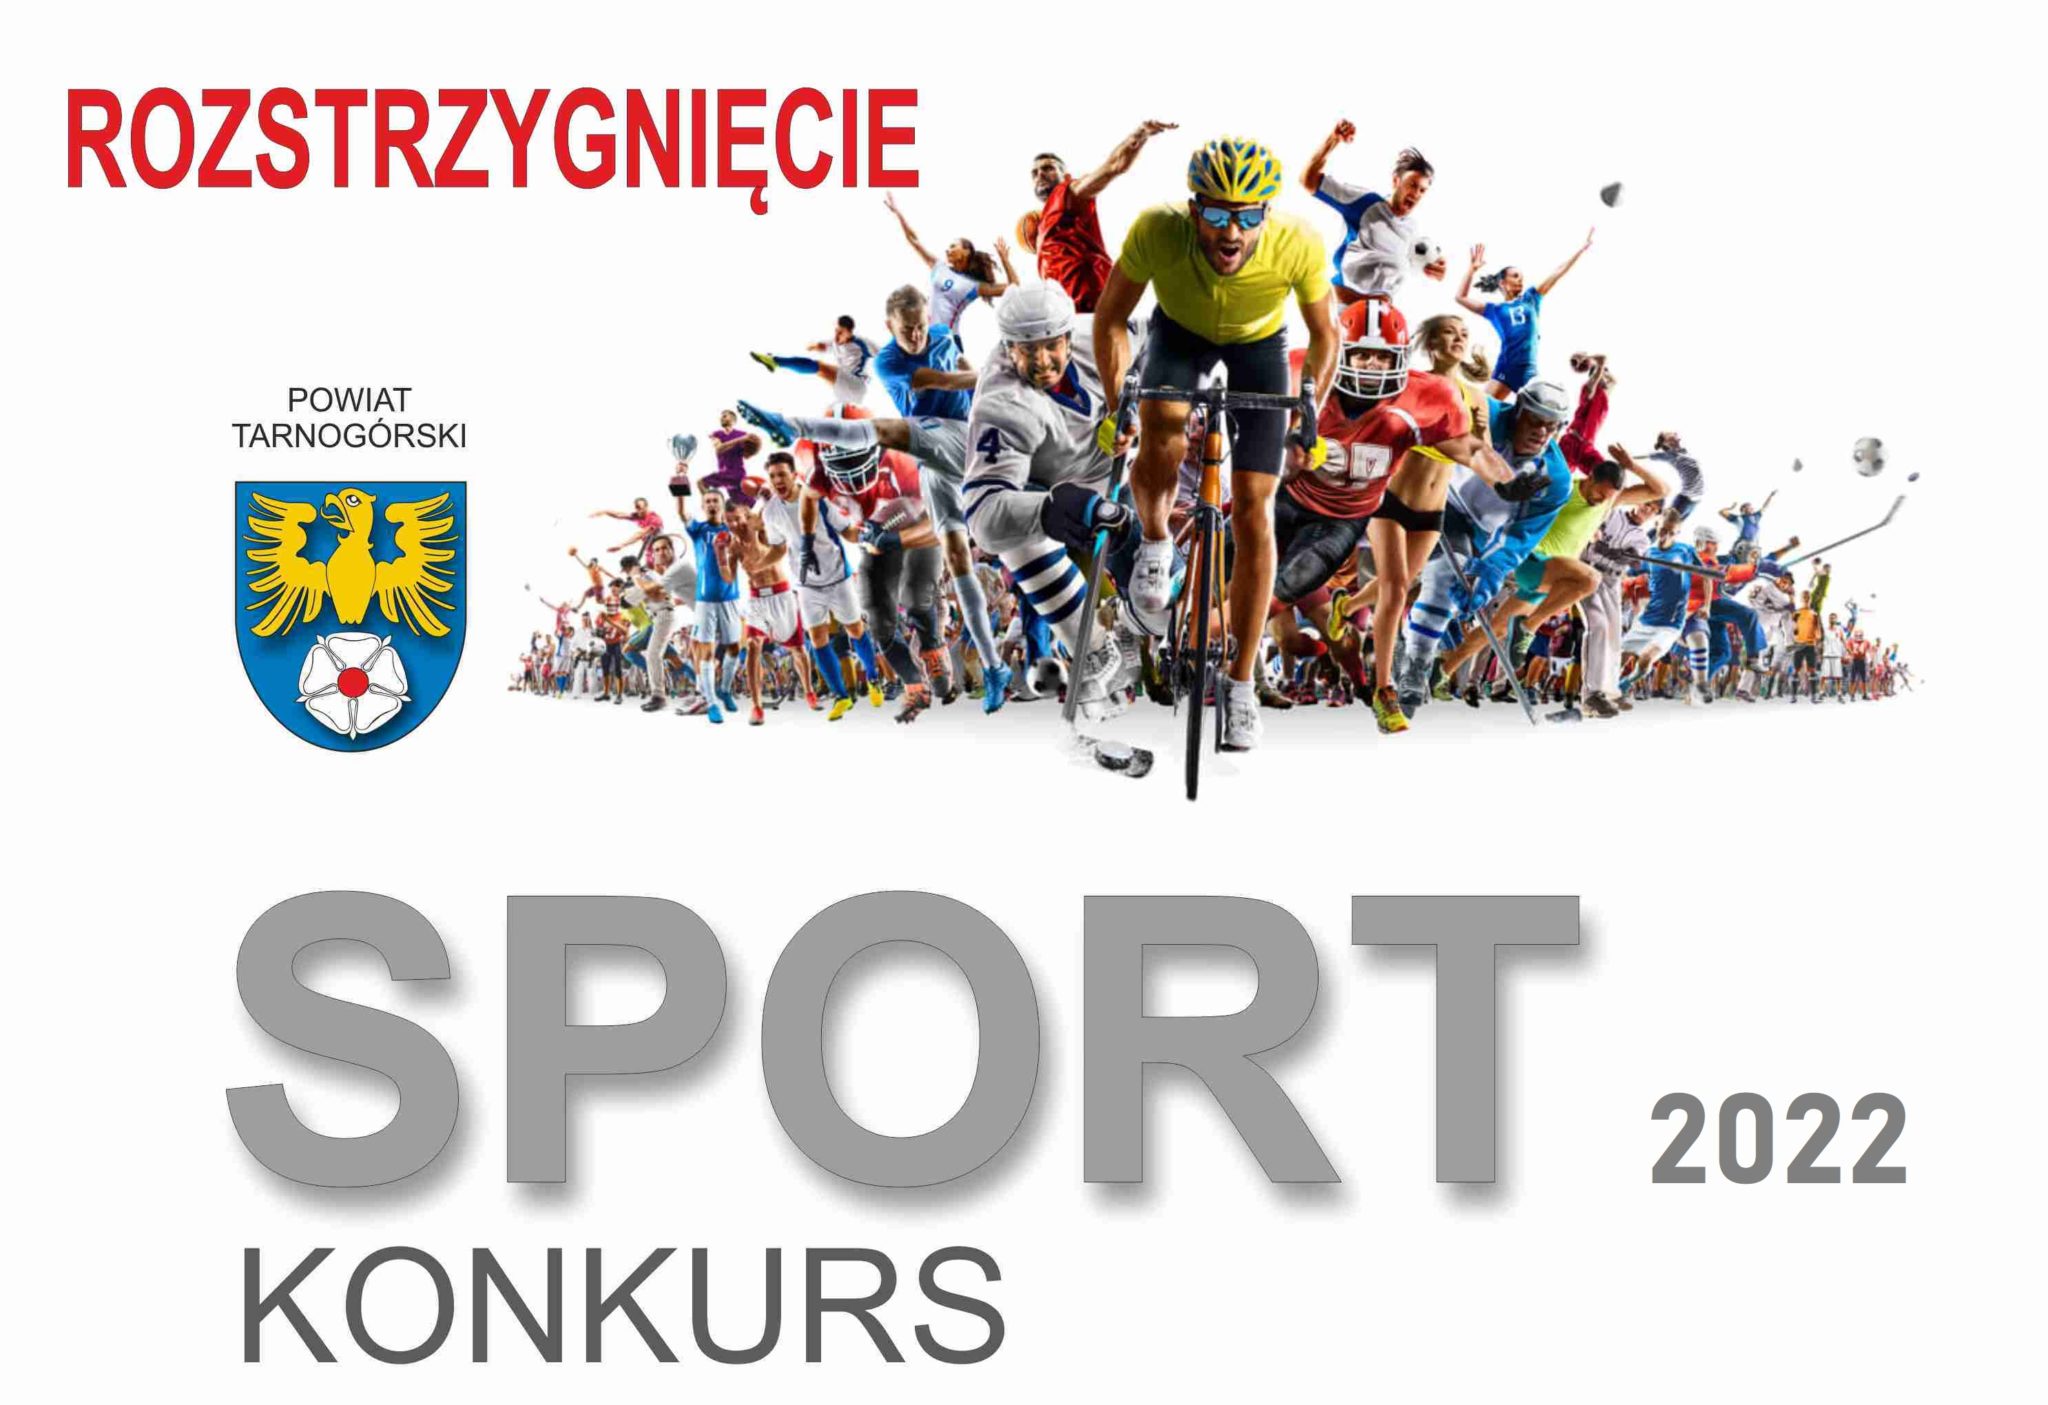 plakat konkurs sport rozstrzygnięcie wtle peleton kolarski oraz logo powiatu